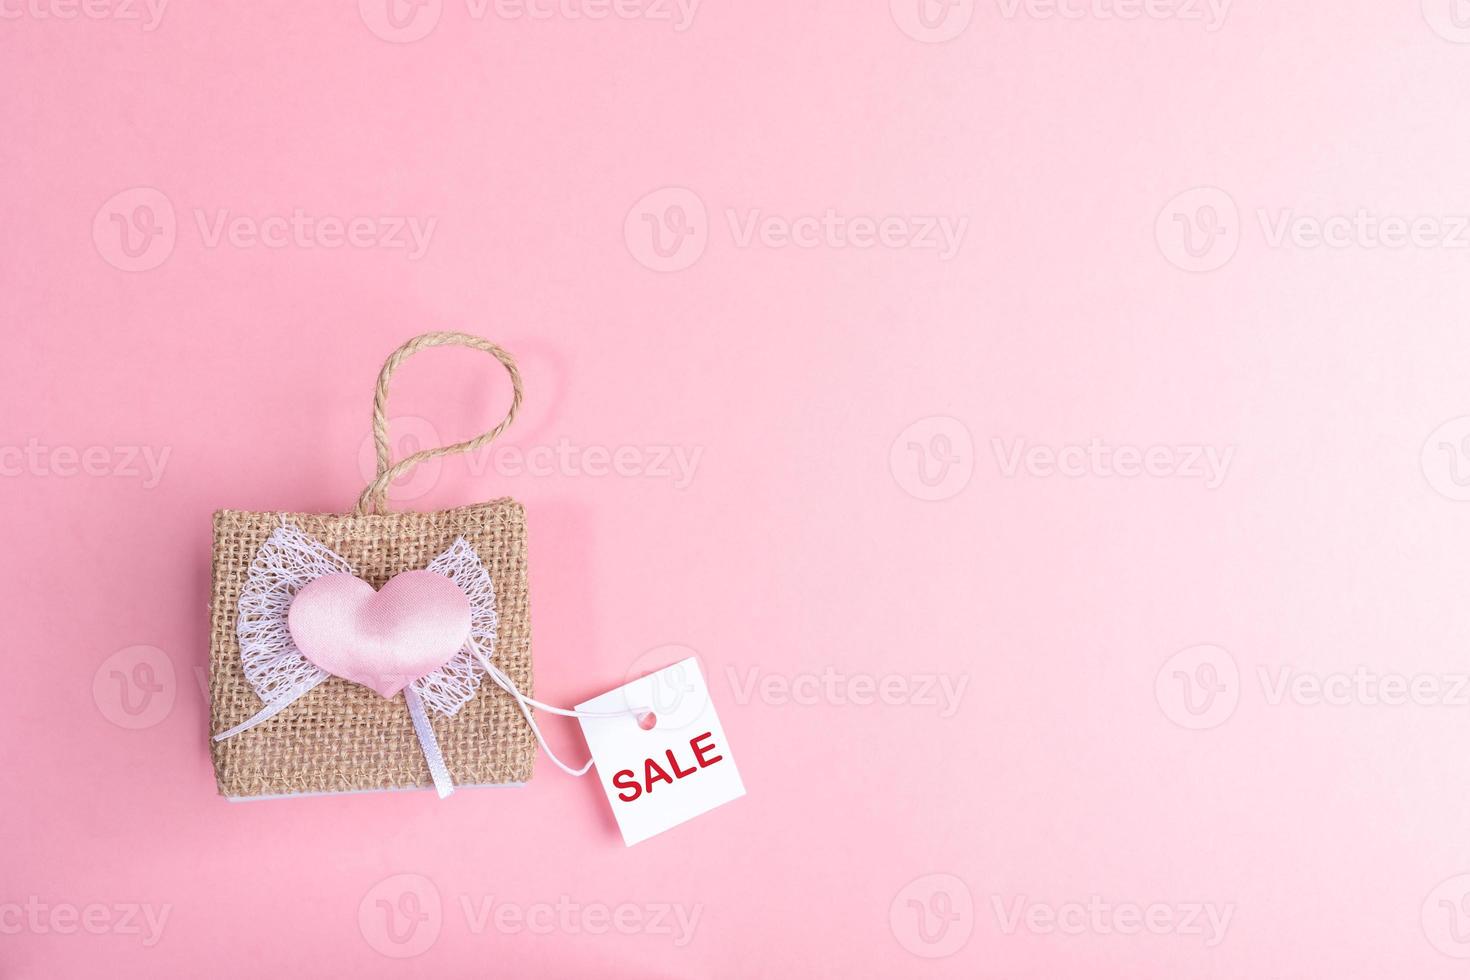 bolsa de vime decorativa pequena e cartão de papel branco com venda de palavras no fundo rosa. conceito de venda do dia dos namorados. foto